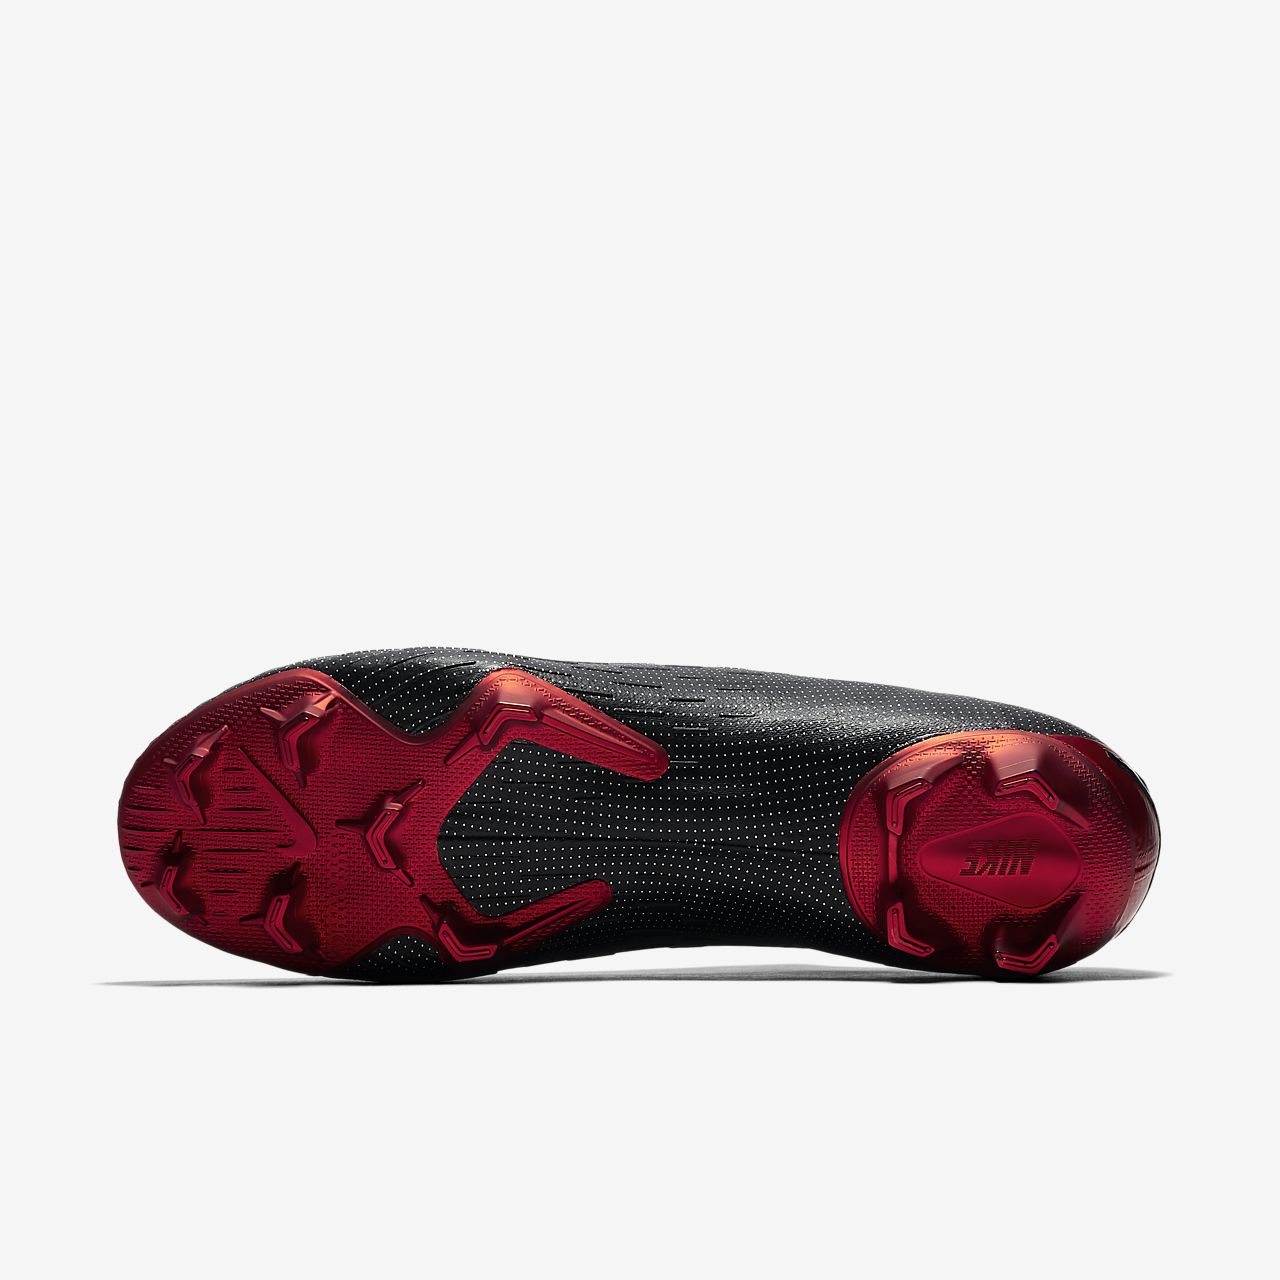 Nike Mercurial Vapor IX FG a 120,00 Miglior prezzo su idealo